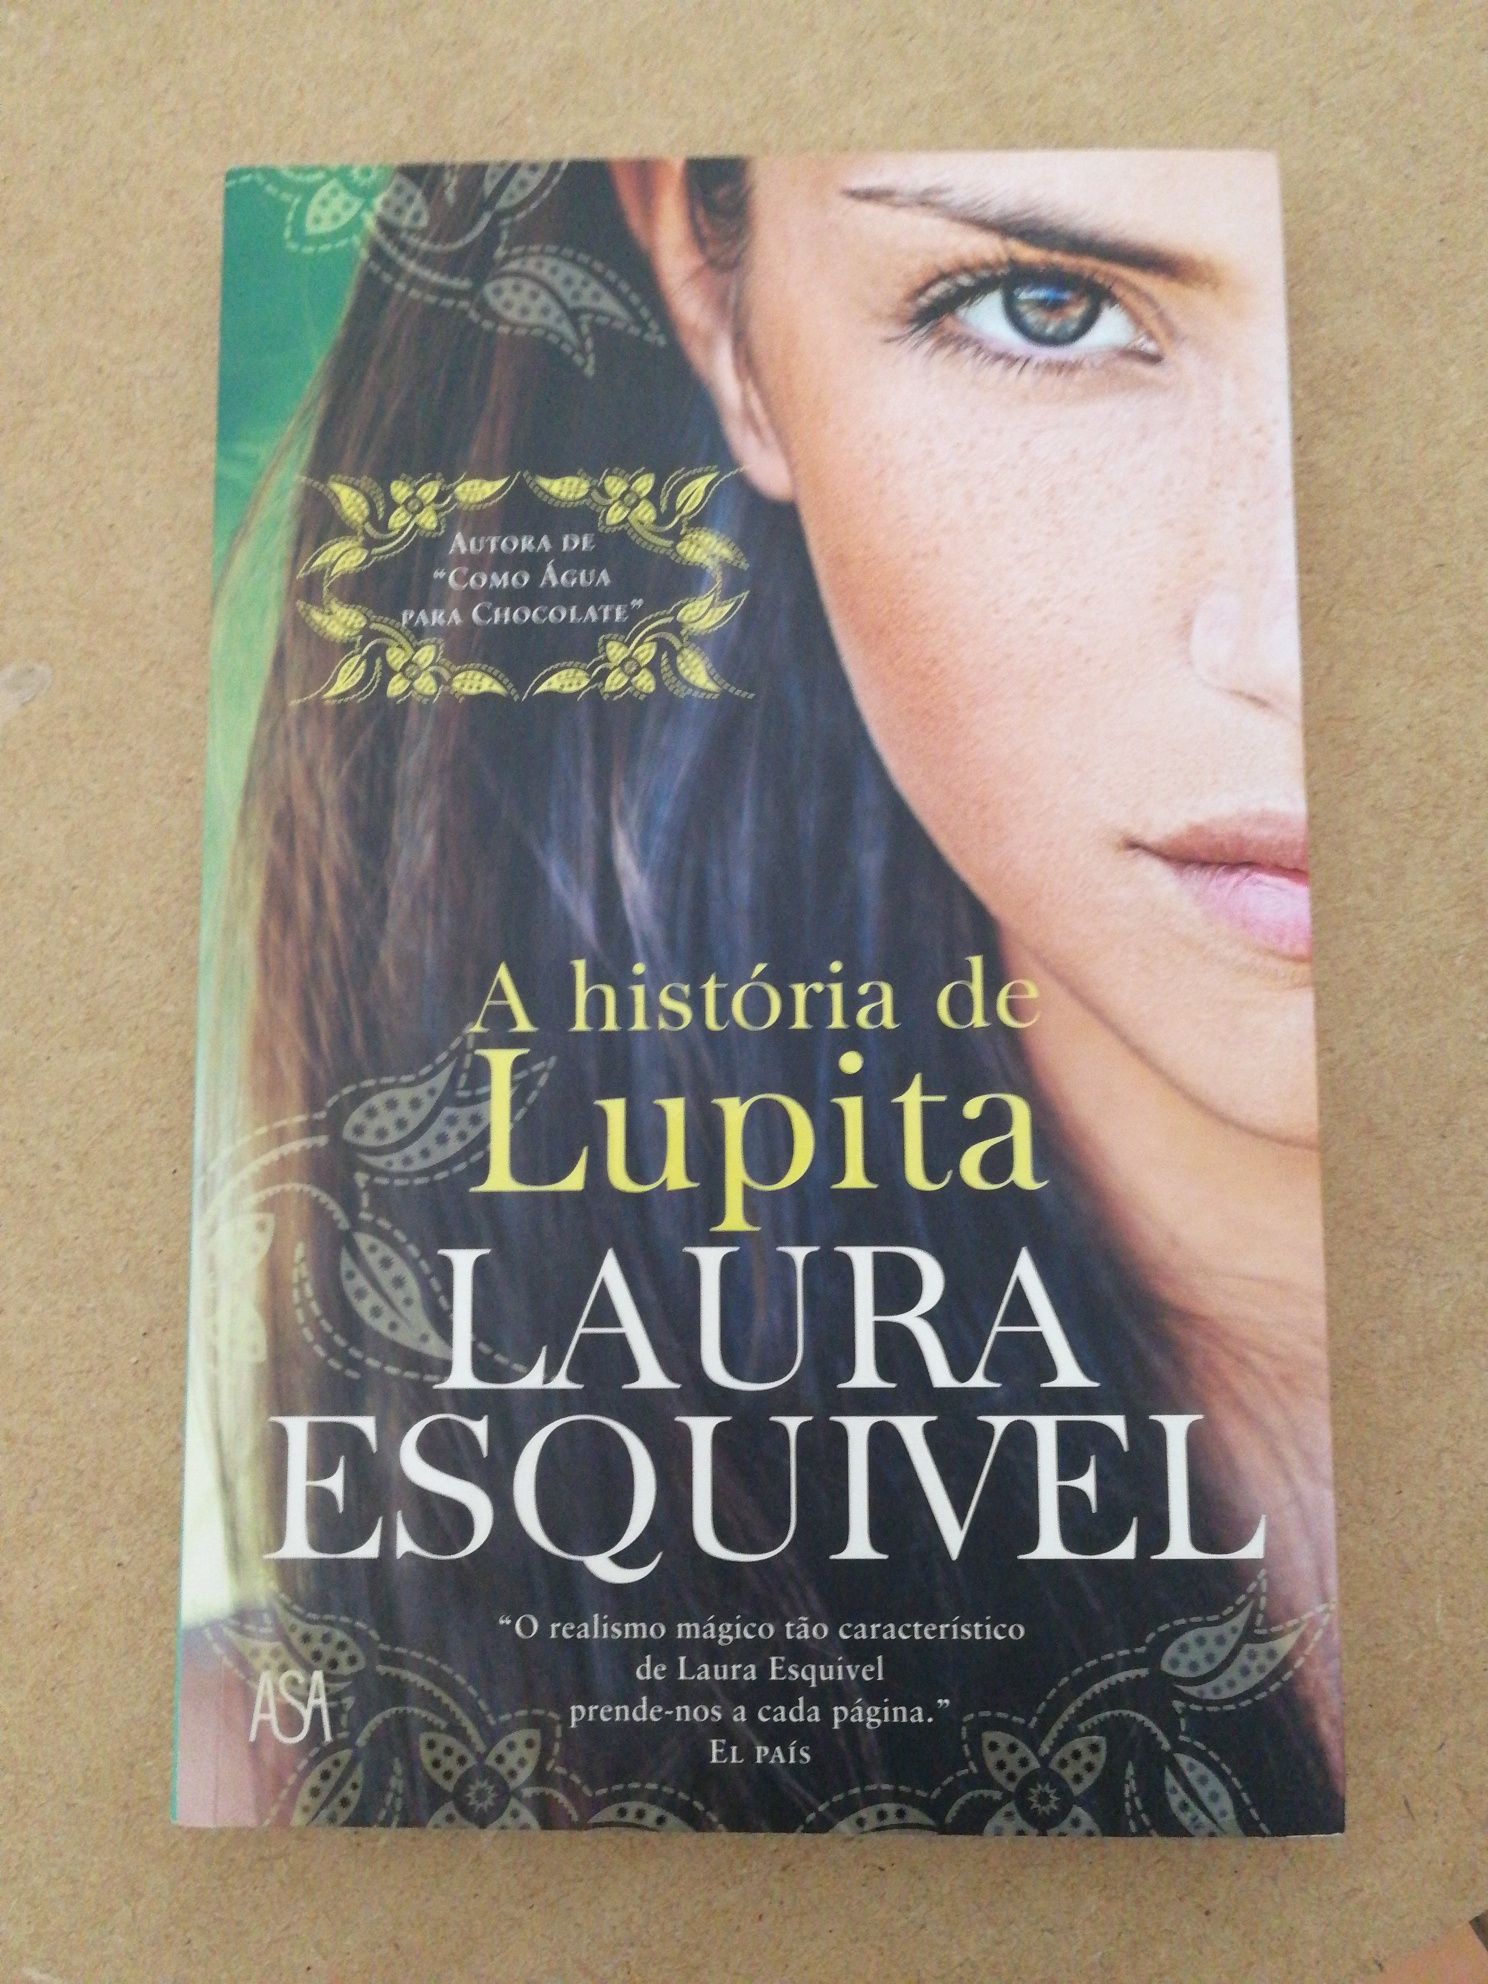 Livro "A História de Lupita" de Laura Esquivel